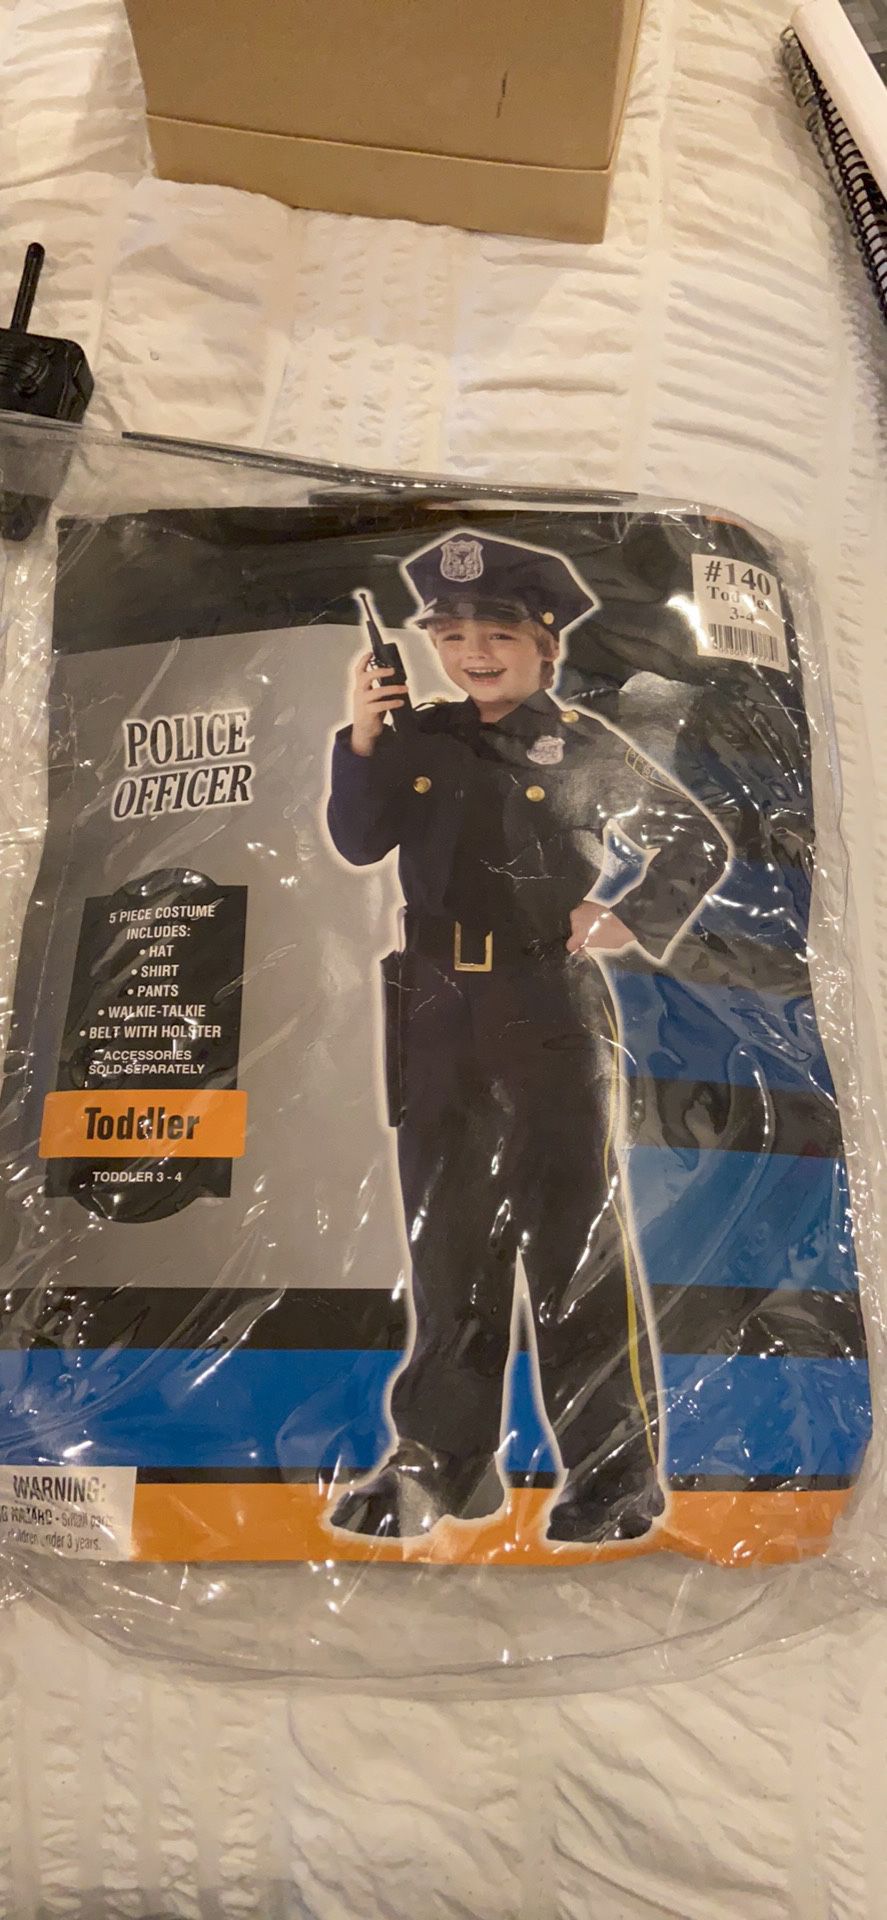 Police custom for boys